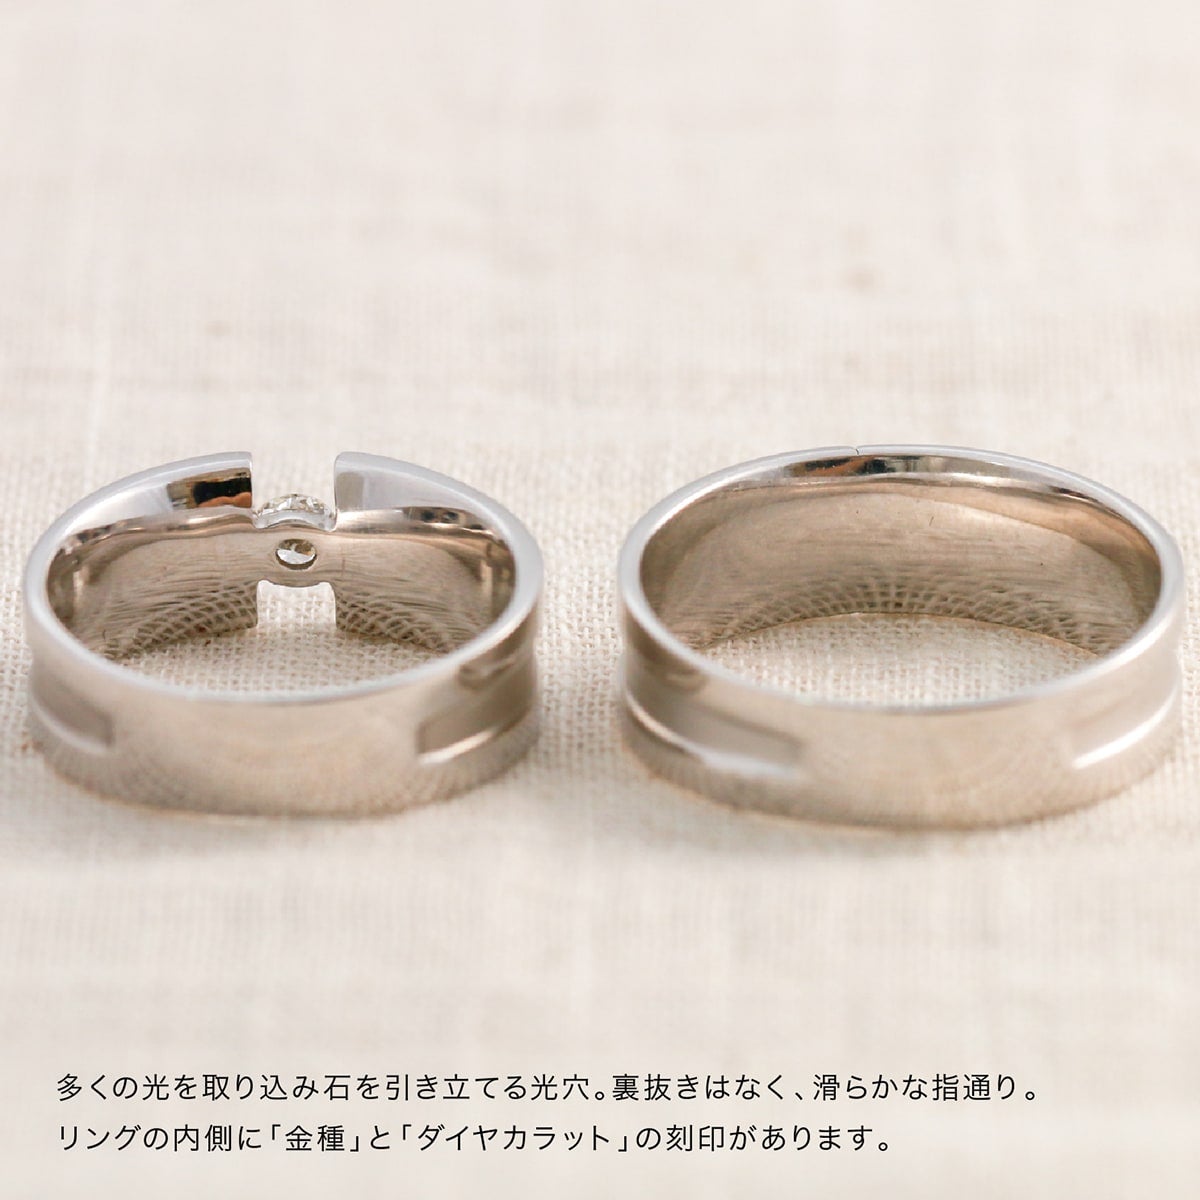 ダイアモンドの指輪/RING/ 2.618 ct. - リング(指輪)